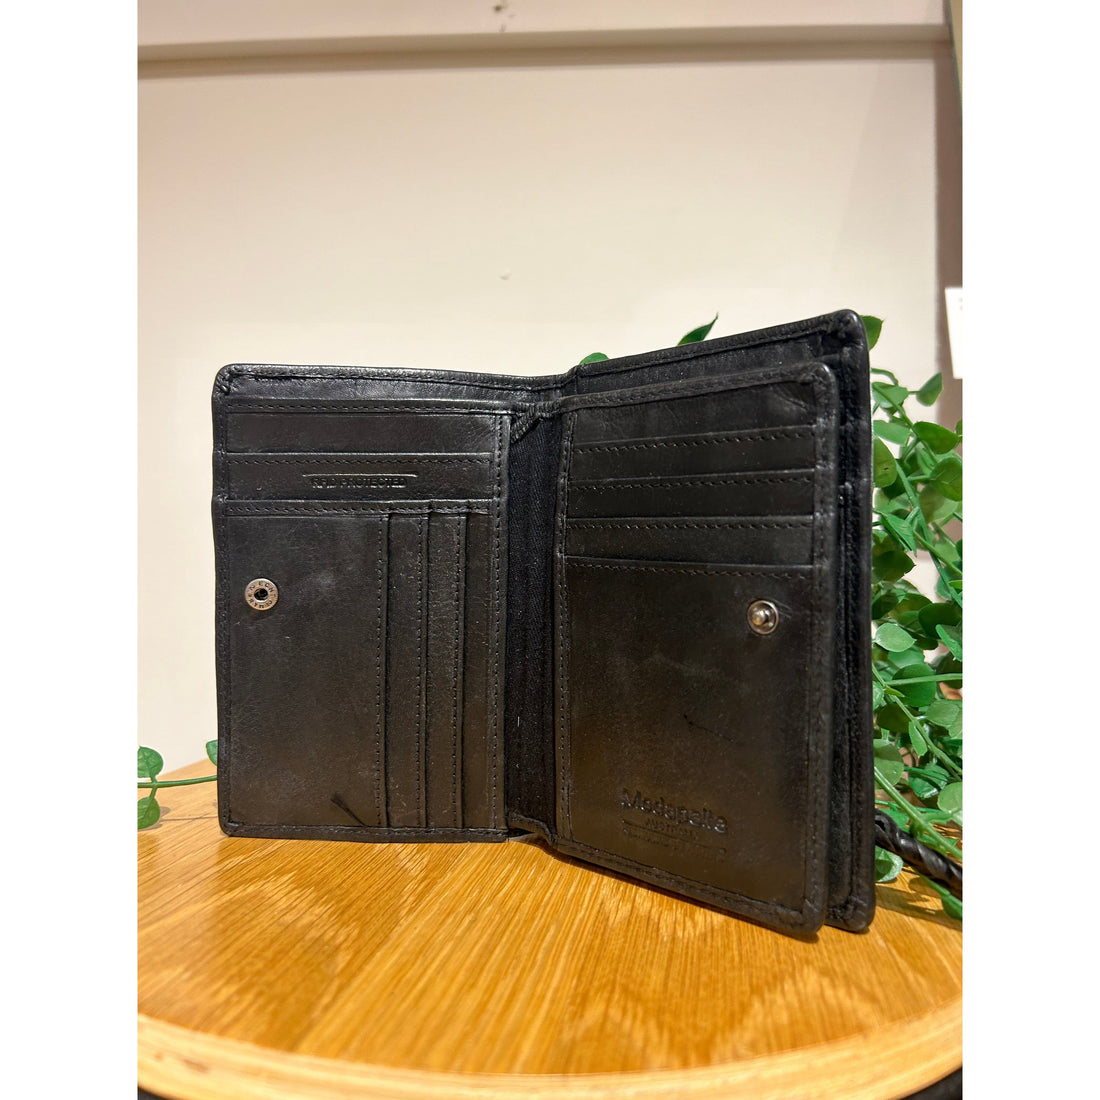 Black Leather Patterned Wallet 